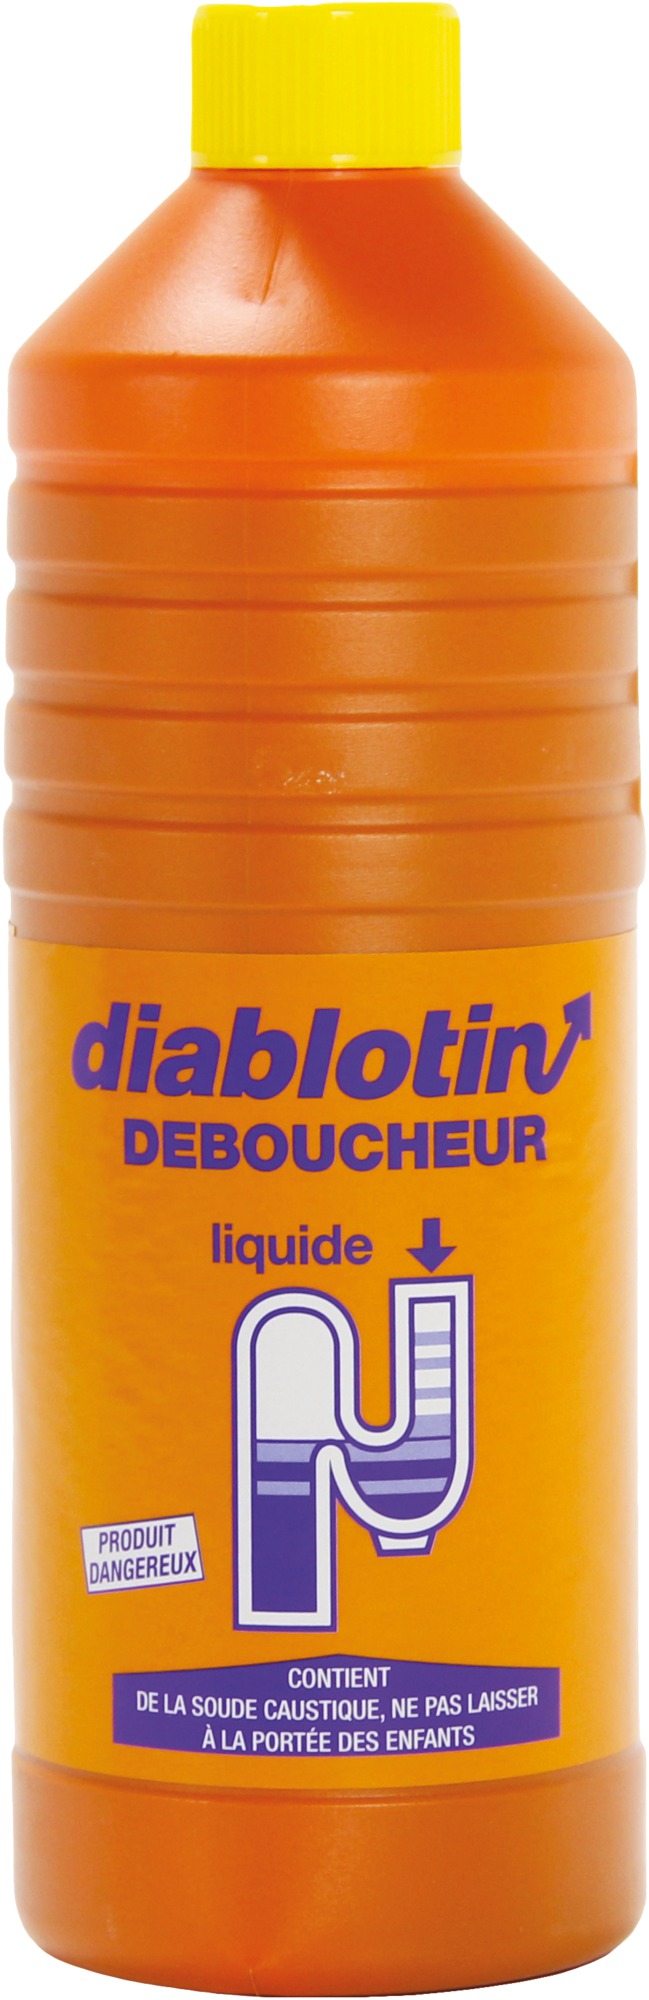 Déboucheur soude Diablotin - Flacon 1 l